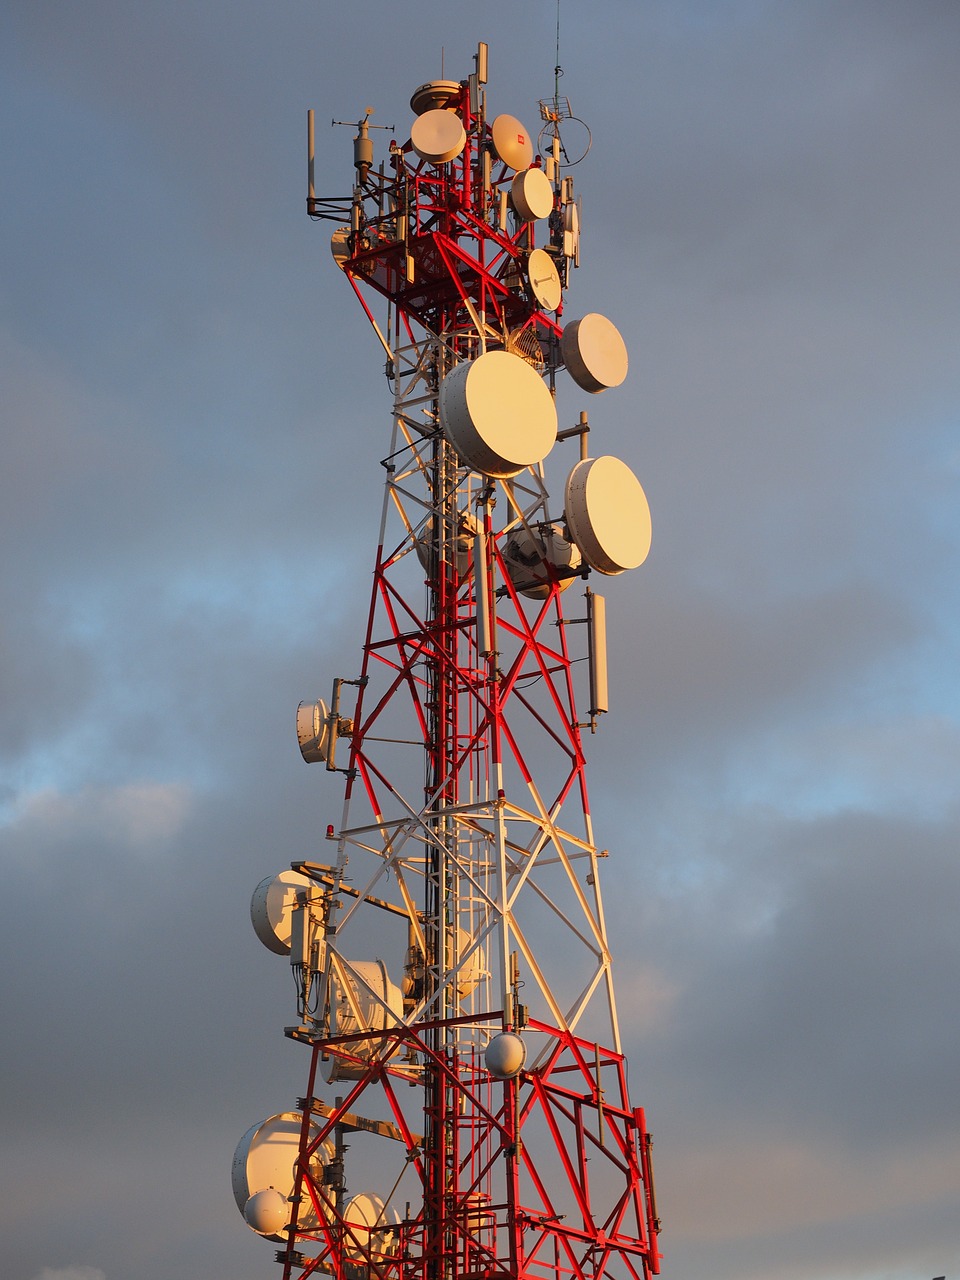 Radaro Įranga, Antenos, Radijo Bokštas, Radijo Stovas, Parabolinė Antena, Siųstuvas, Transmisija, Komunikacija, Navigacija, Radaras